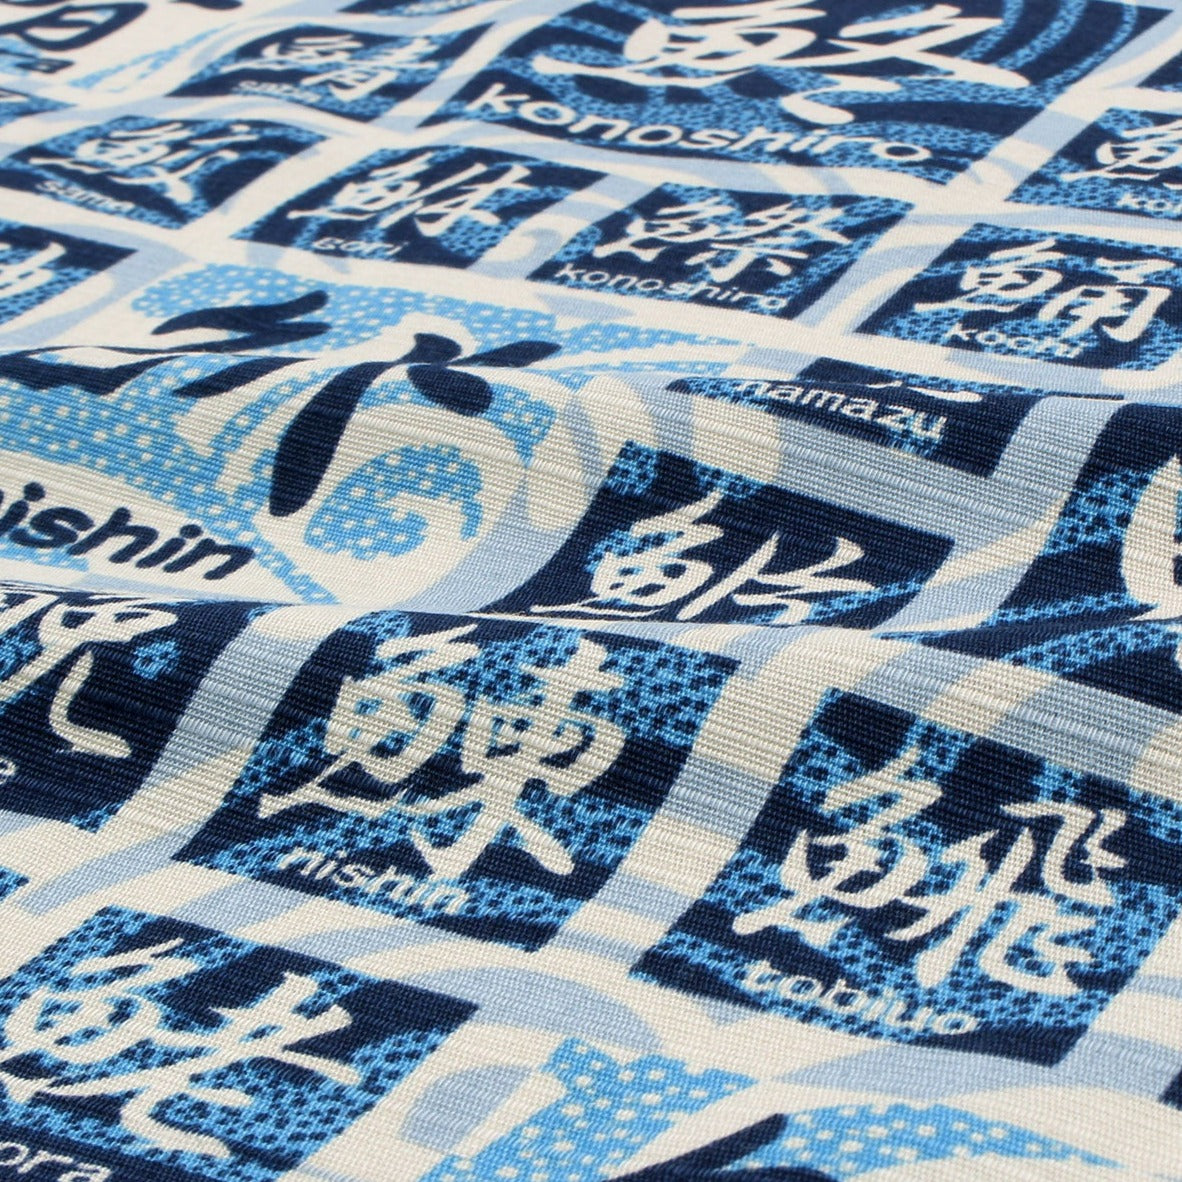 Furoshiki Sakana Kanji (blu, 50 cm)